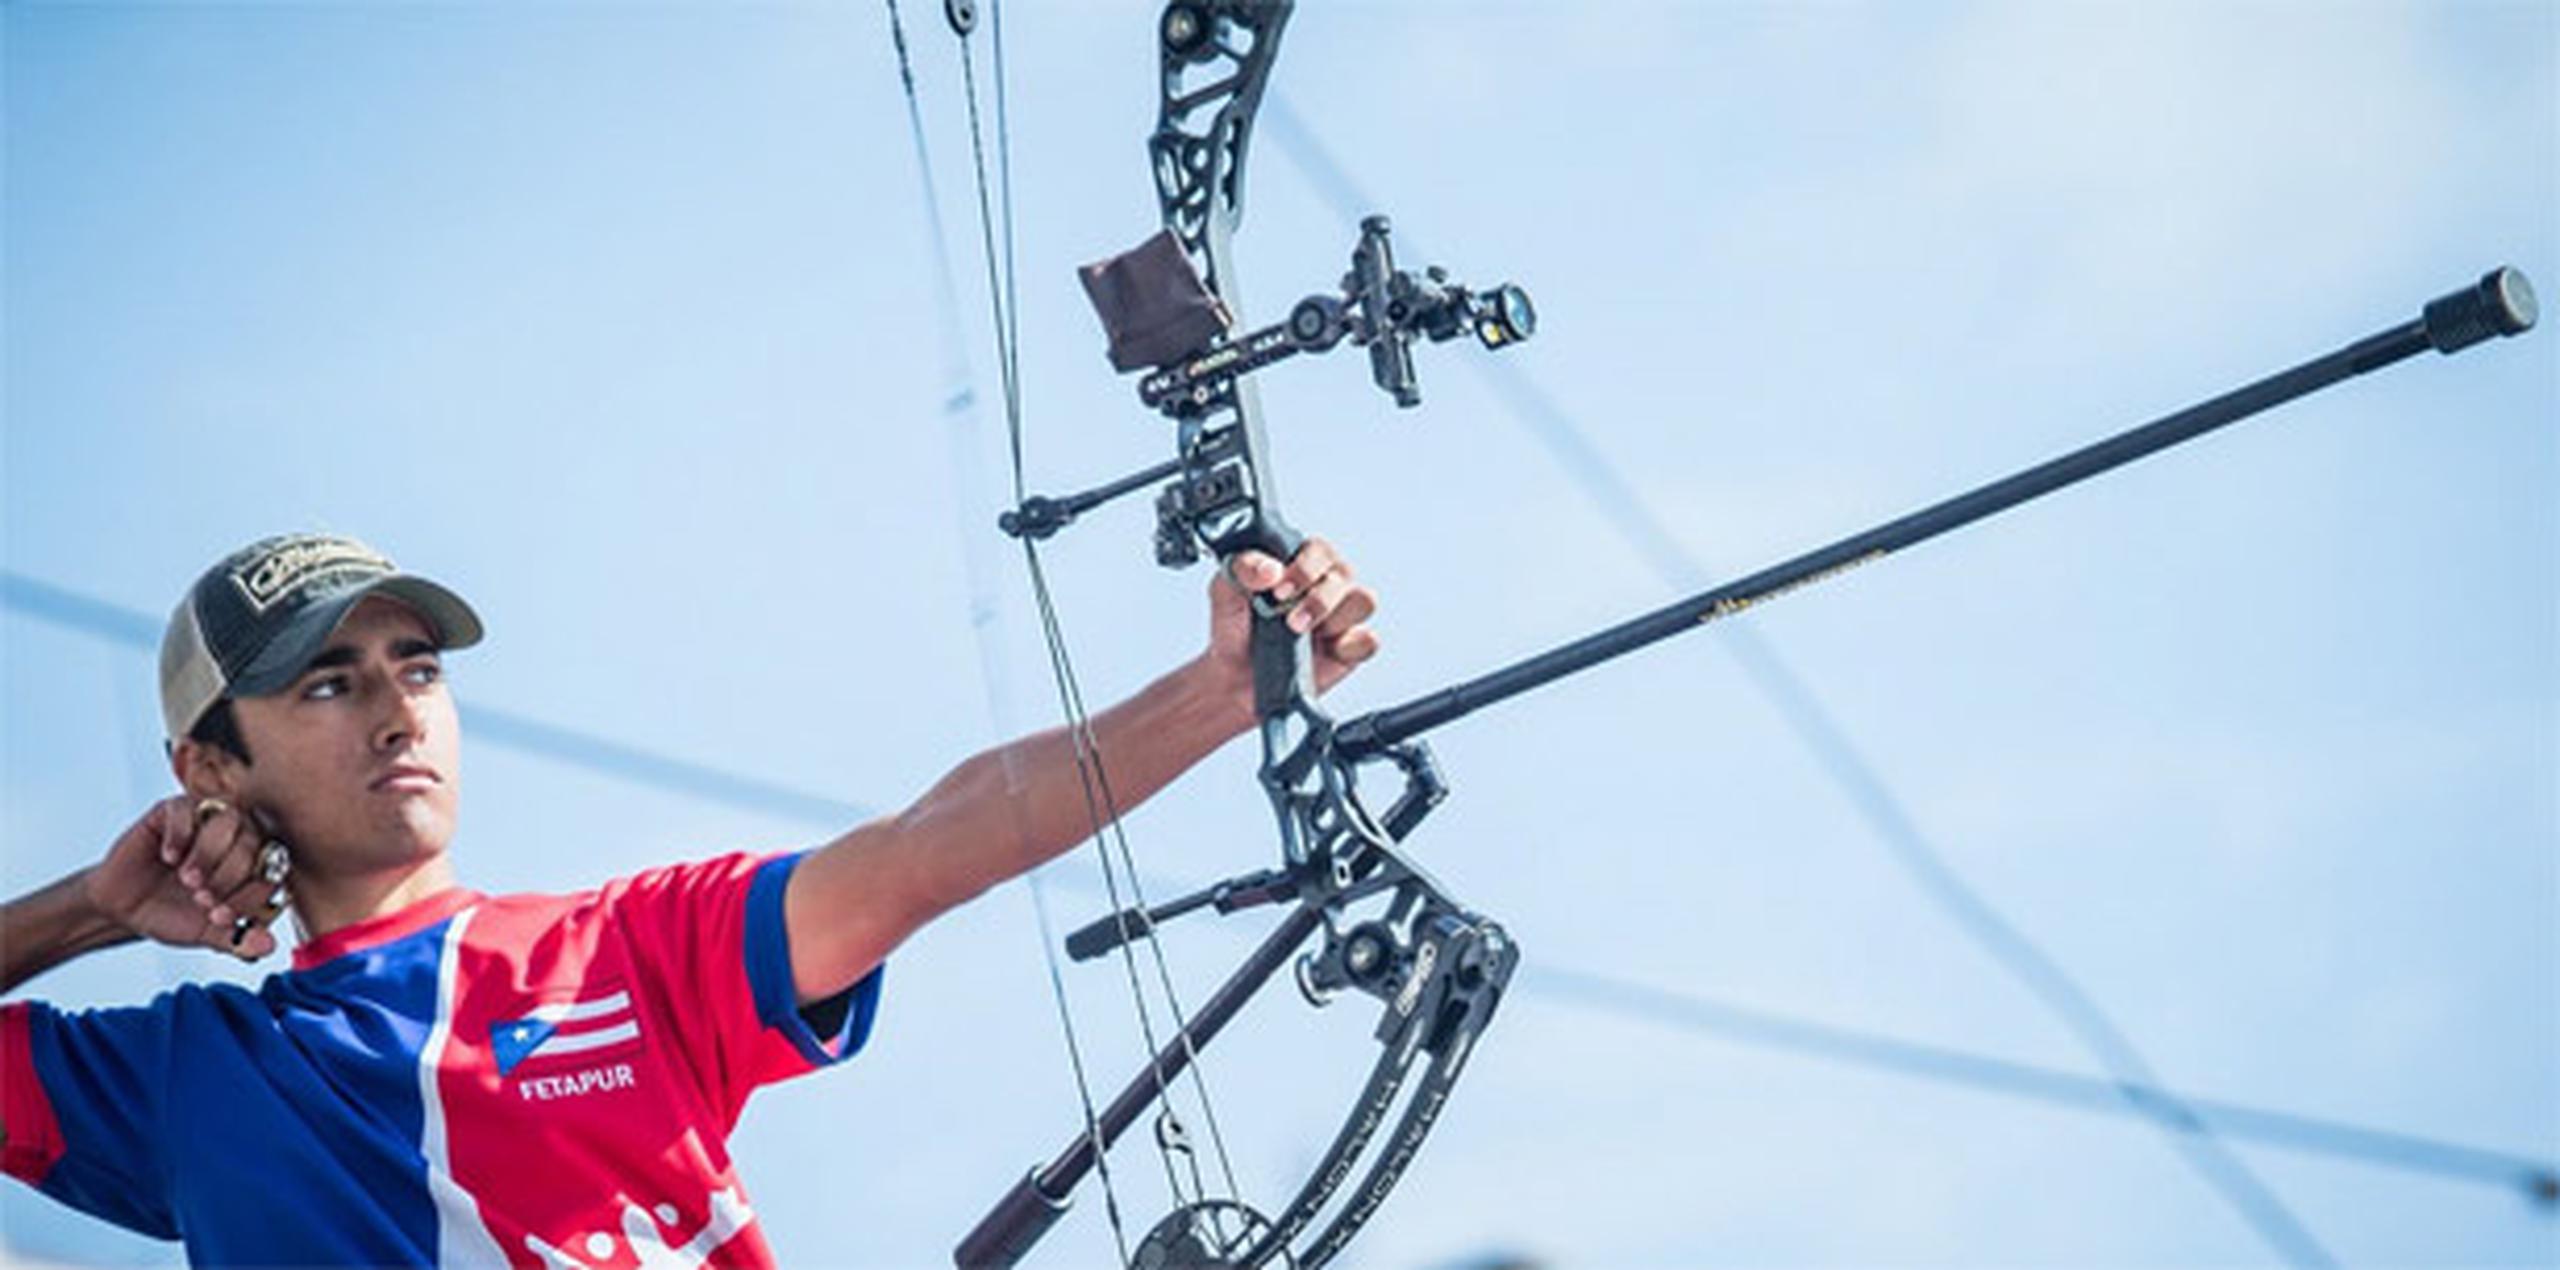 El atleta de 16 años contó a World Archery que terminó su preparación para el campeonato en su casa porque el campo de tiro fue destruido por el huracán María. (worldarchery.org)